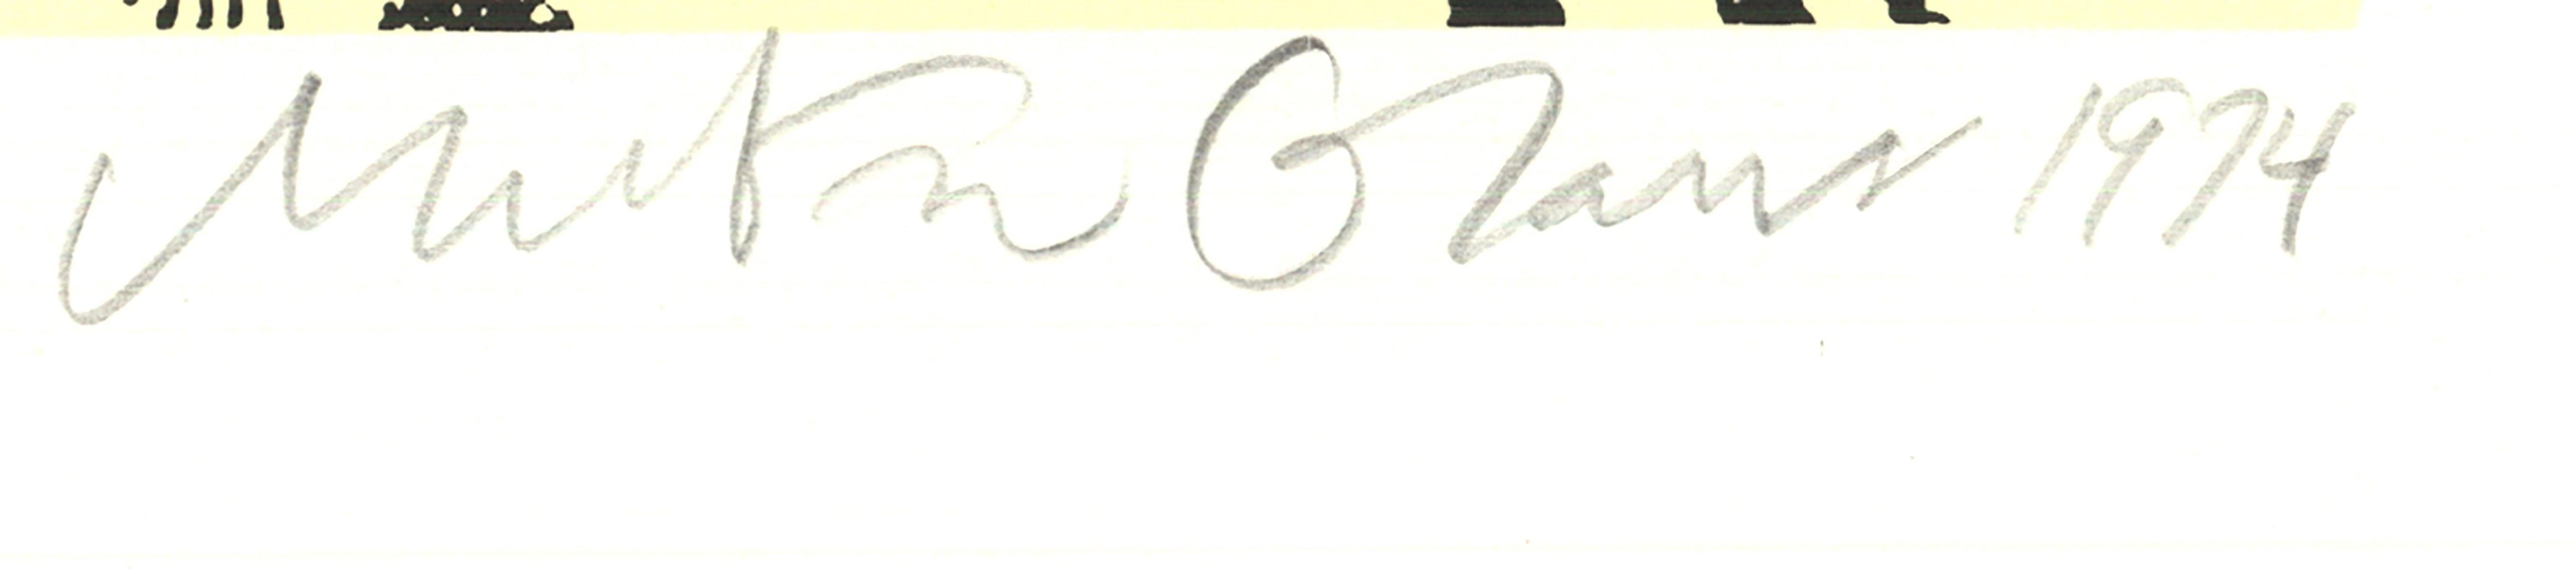 MILTON GLASER Olympia and Ollie (After Manet), 1974, signé à la main, limité - Contemporain Print par Milton Glaser